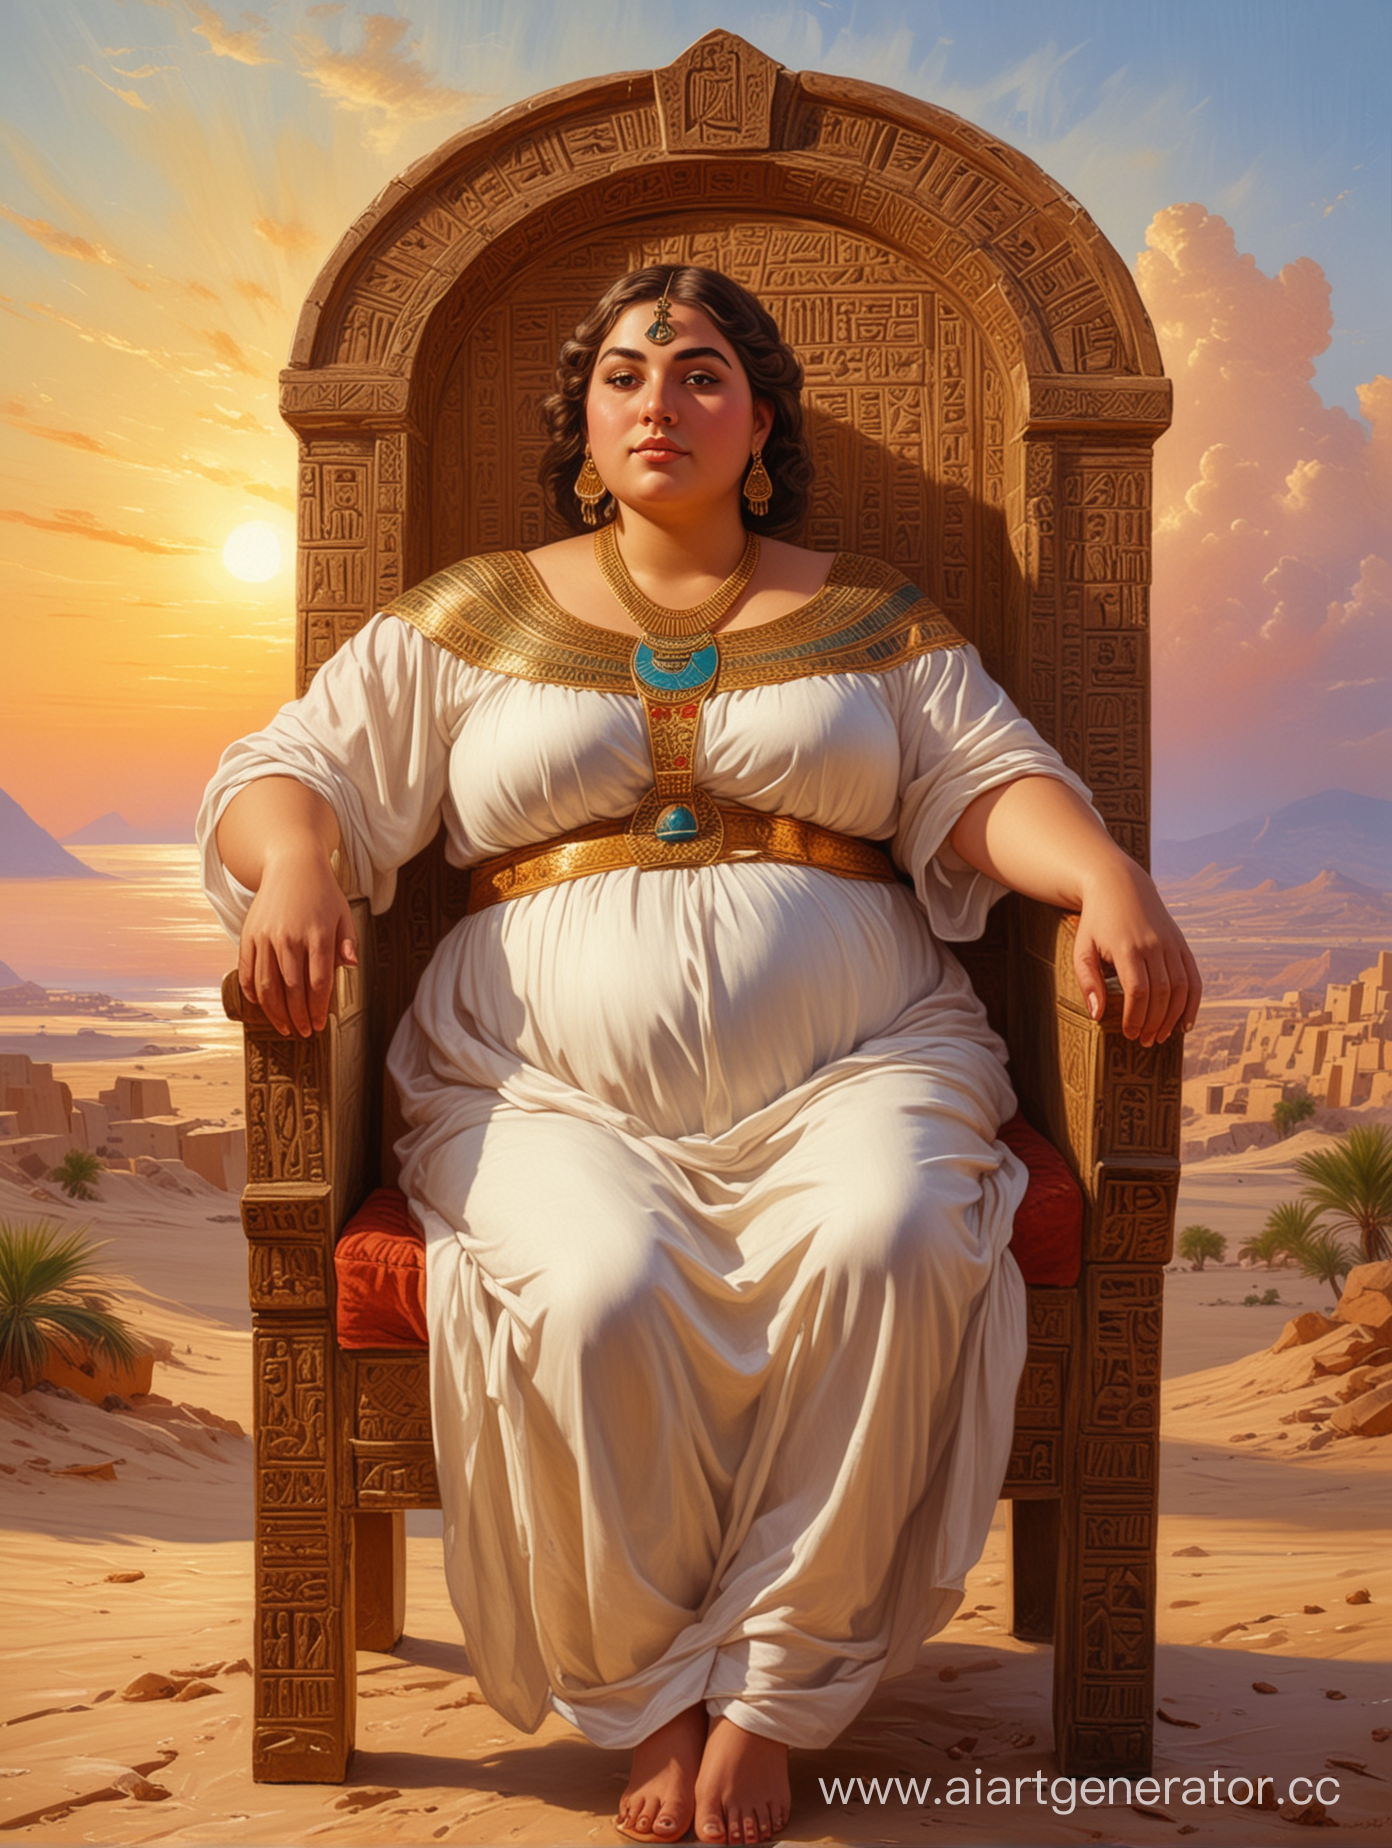 толстая женщина смотрит прямо в восточном египетском костюме, короткие светлые волосы, сидит на резном кресле на фоне небо свечение ярко египет стиль масляная живопись
